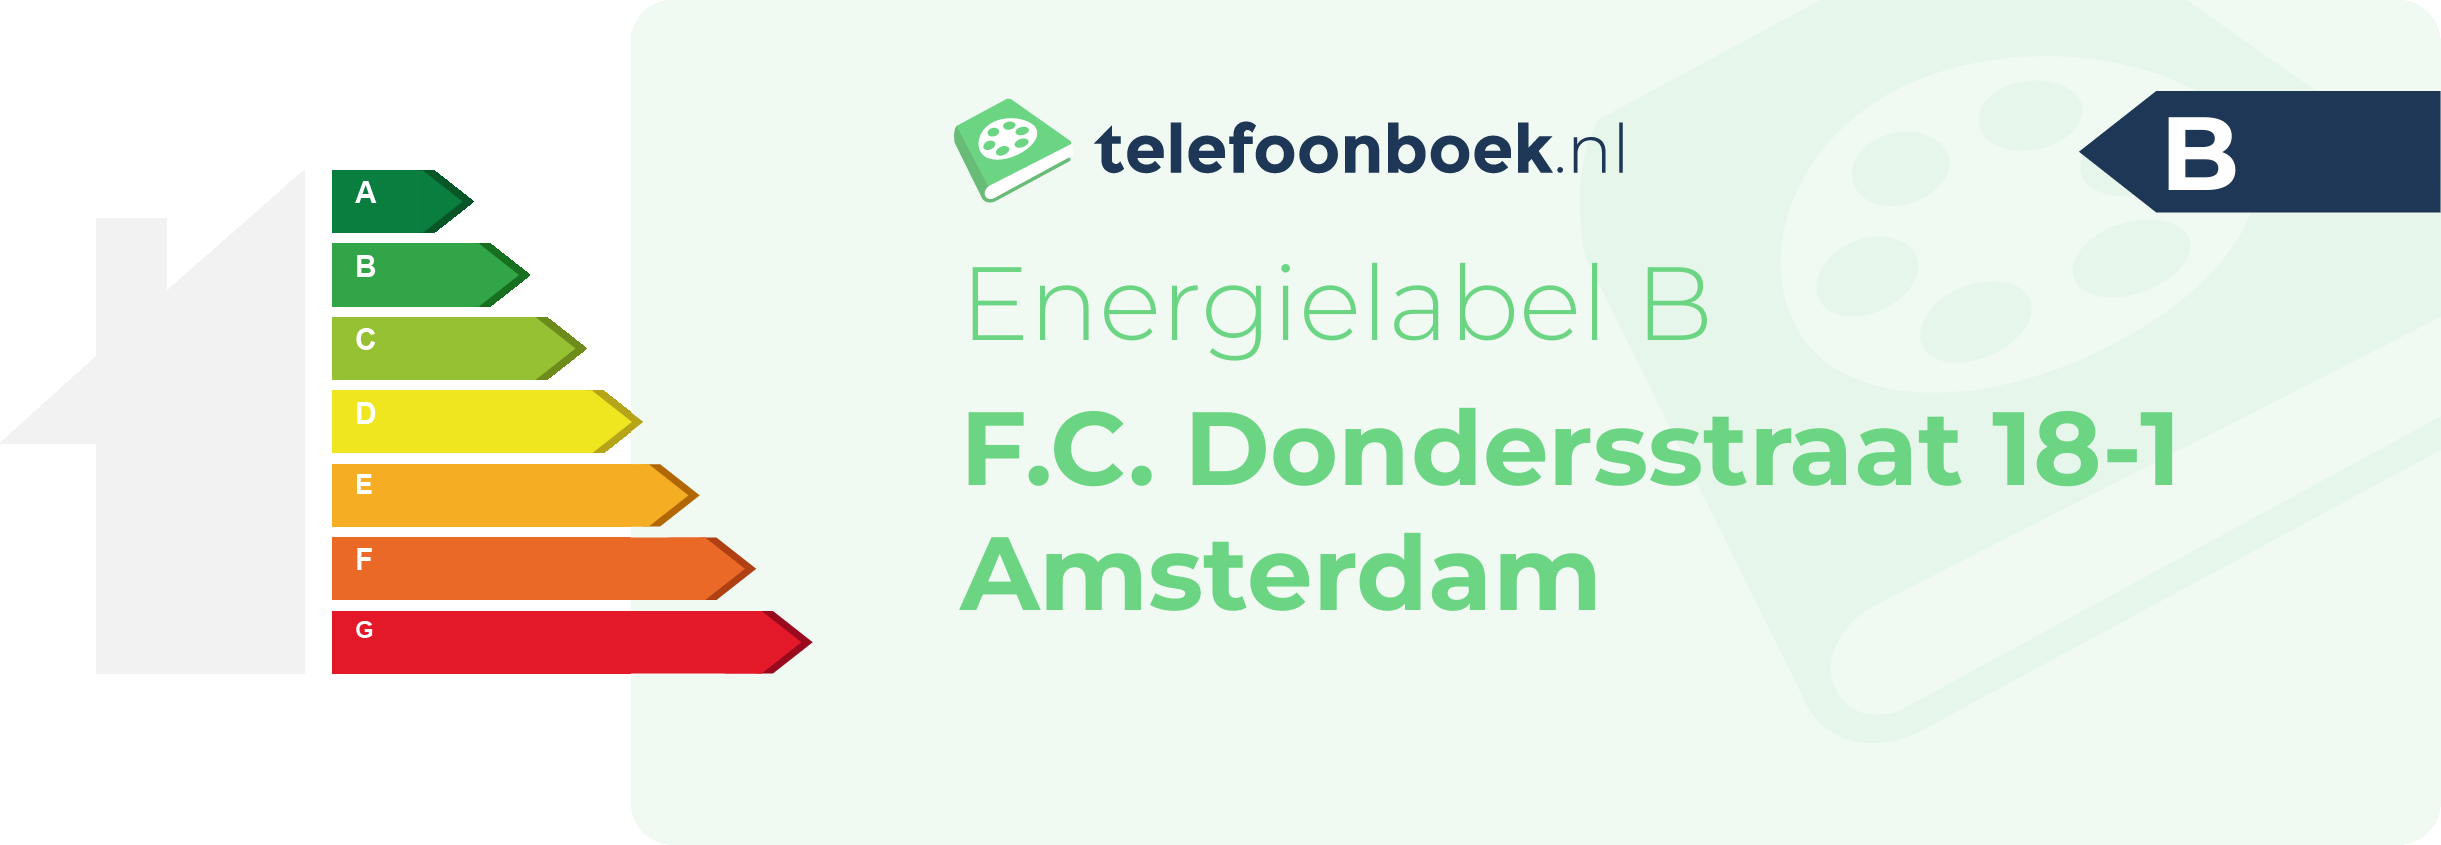 Energielabel F.C. Dondersstraat 18-1 Amsterdam